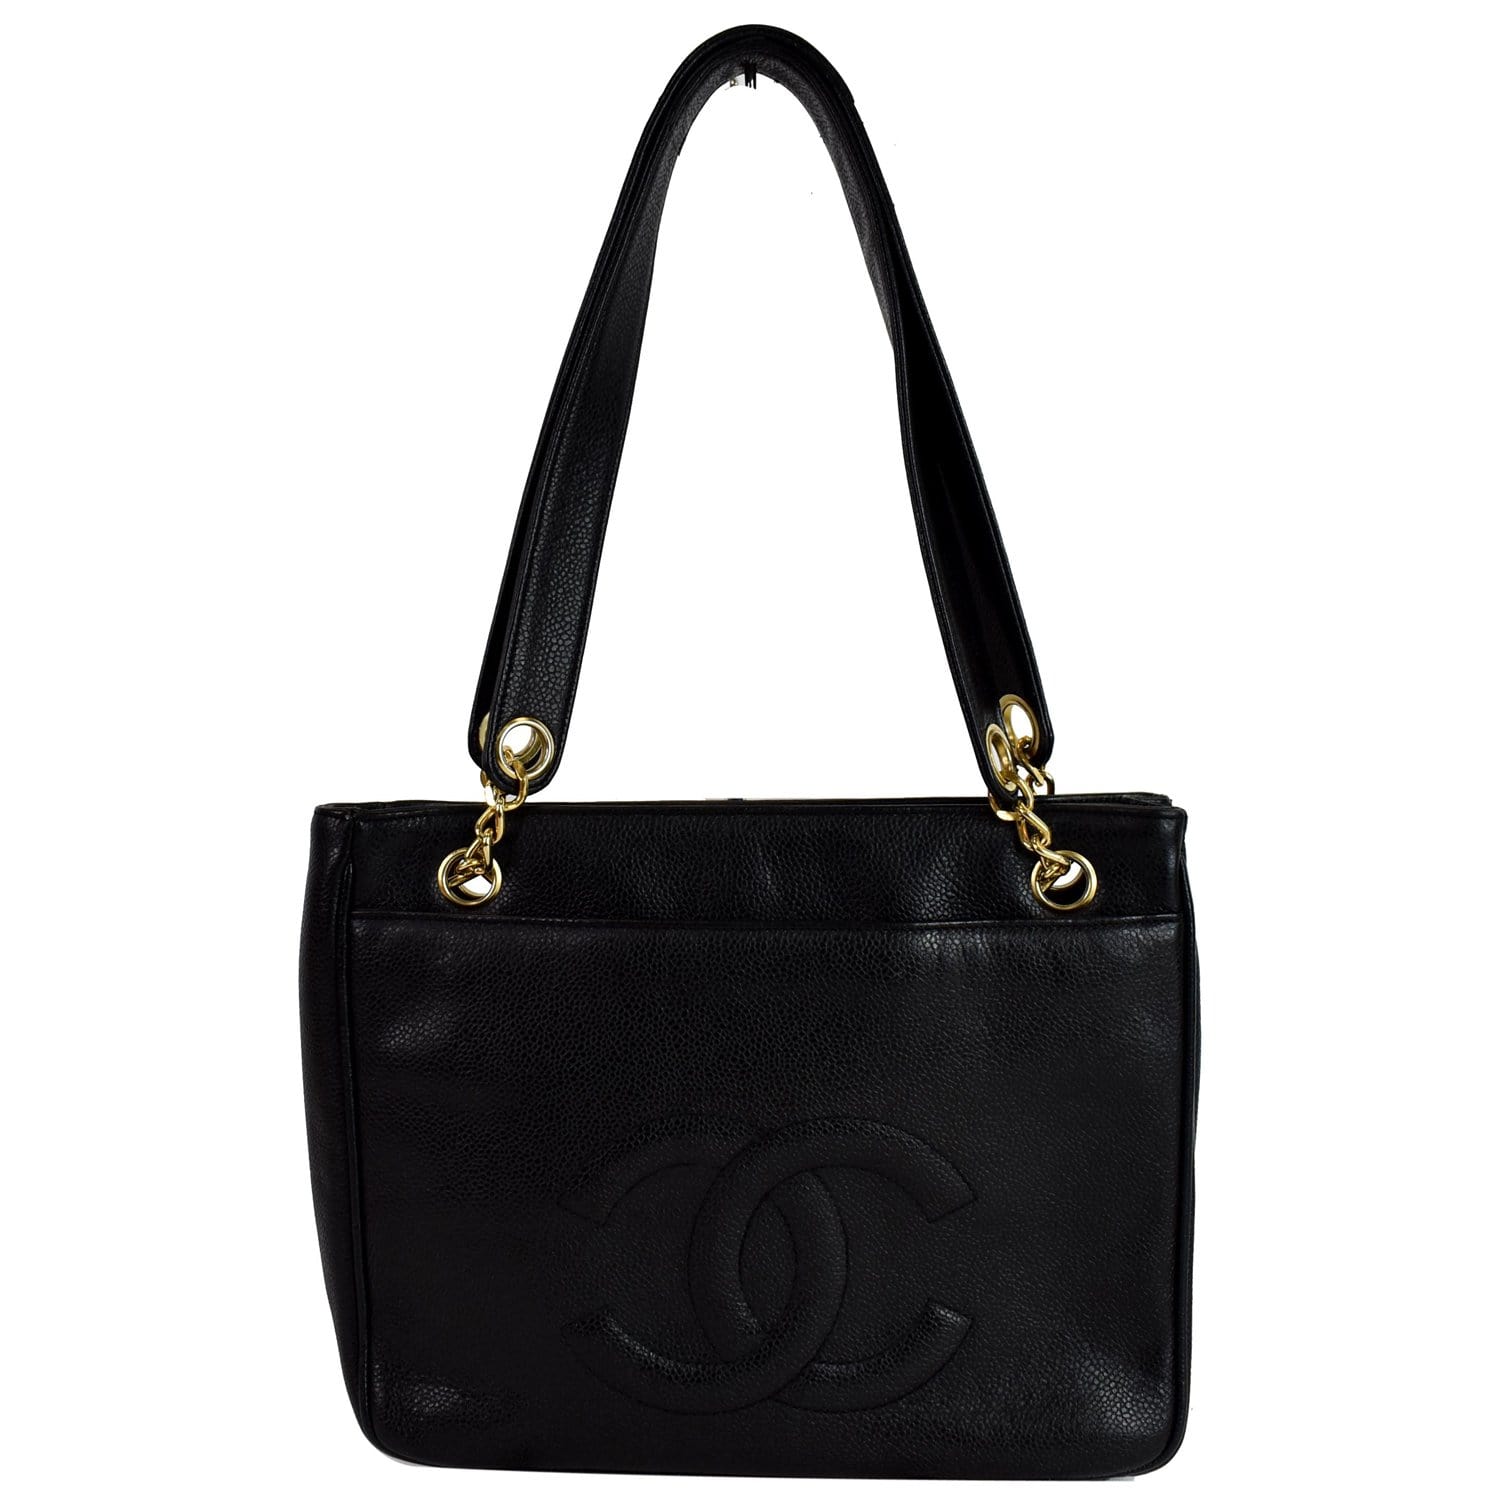 Chanel Black Caviar Leather Shoulder Bag - Vintage Lux